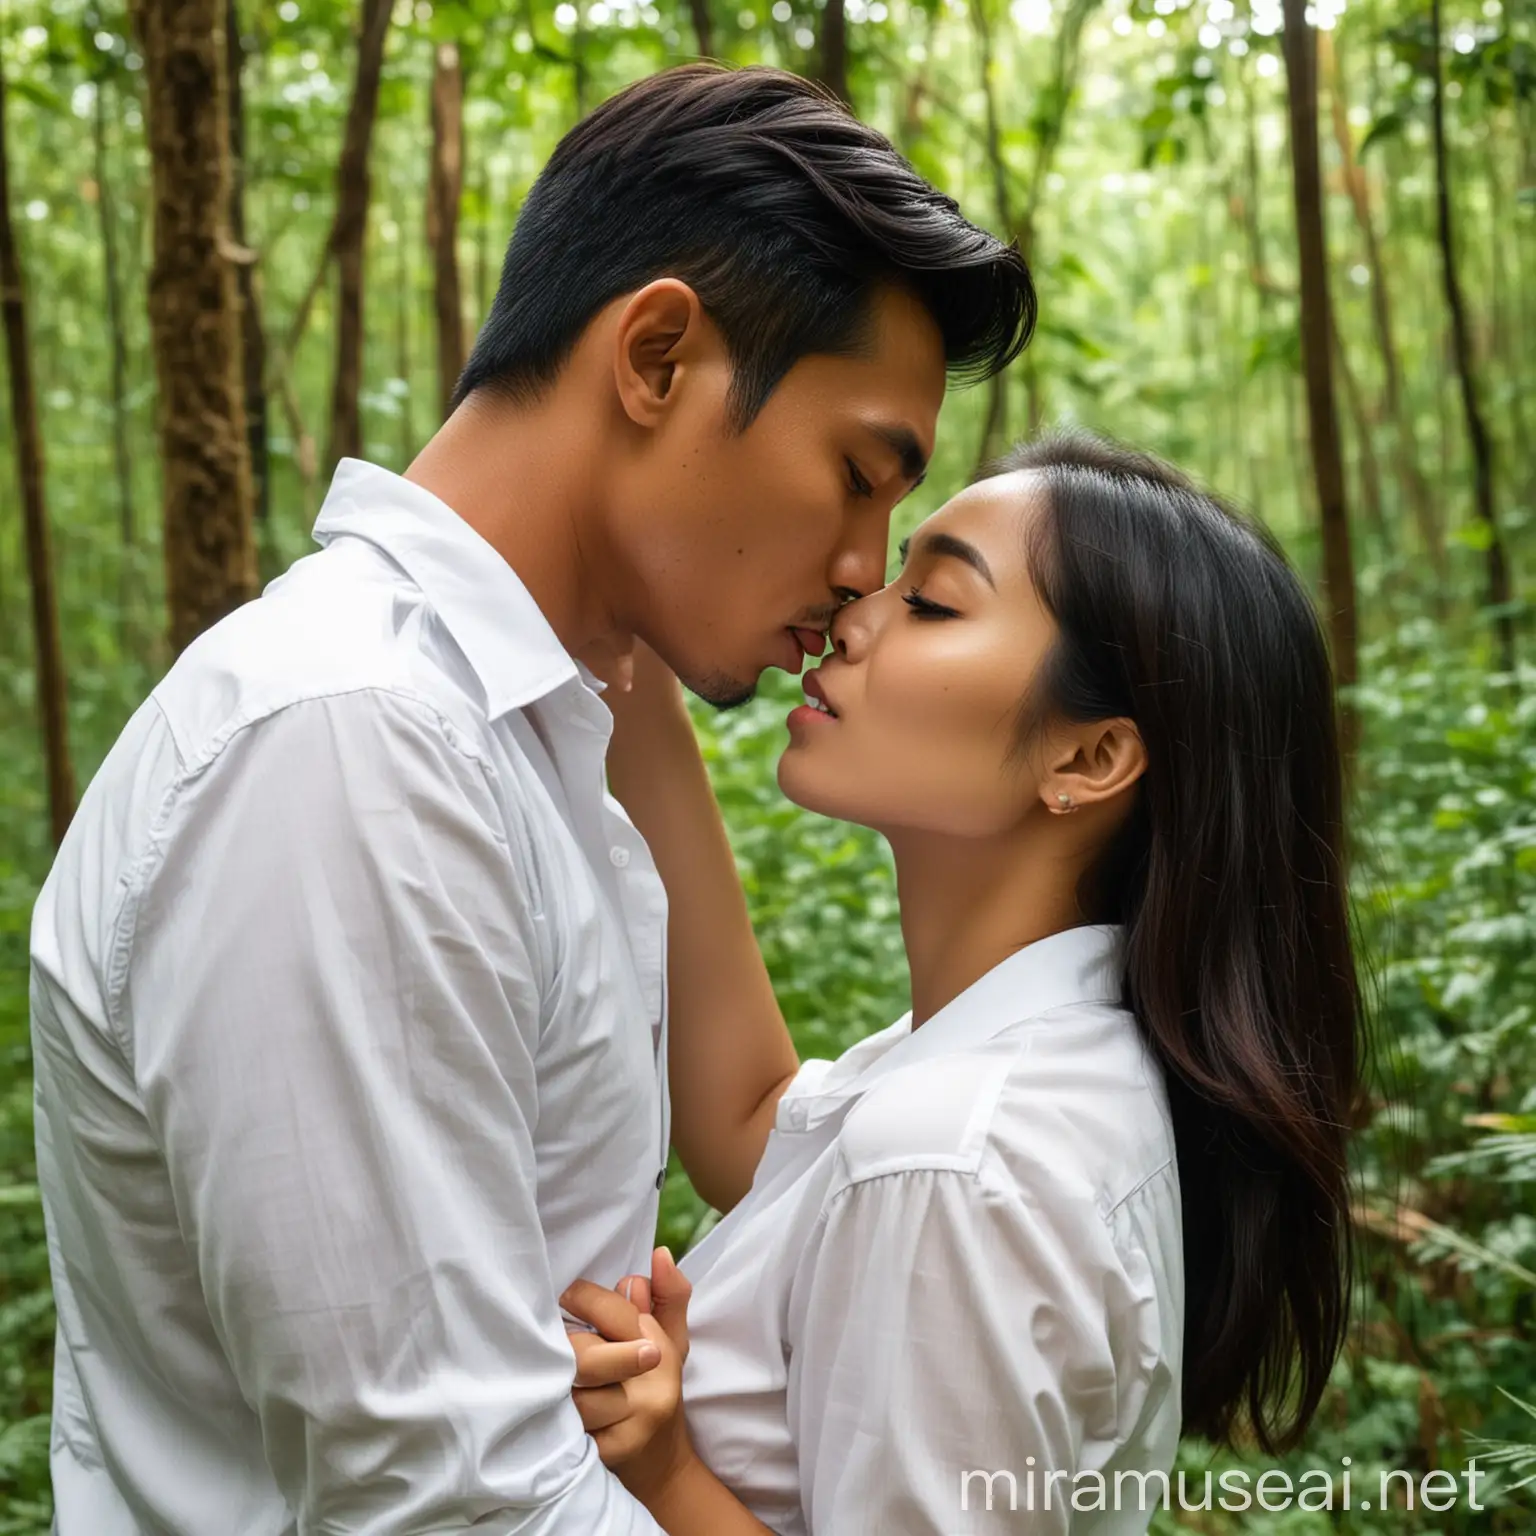 Pasangan pria dan wanita indonesia,tampan dan cantik, terlihat sedang berciuman di hutan.perempuan dengan baju kameja putih,dada terbuka.tangan pria memegang nya.